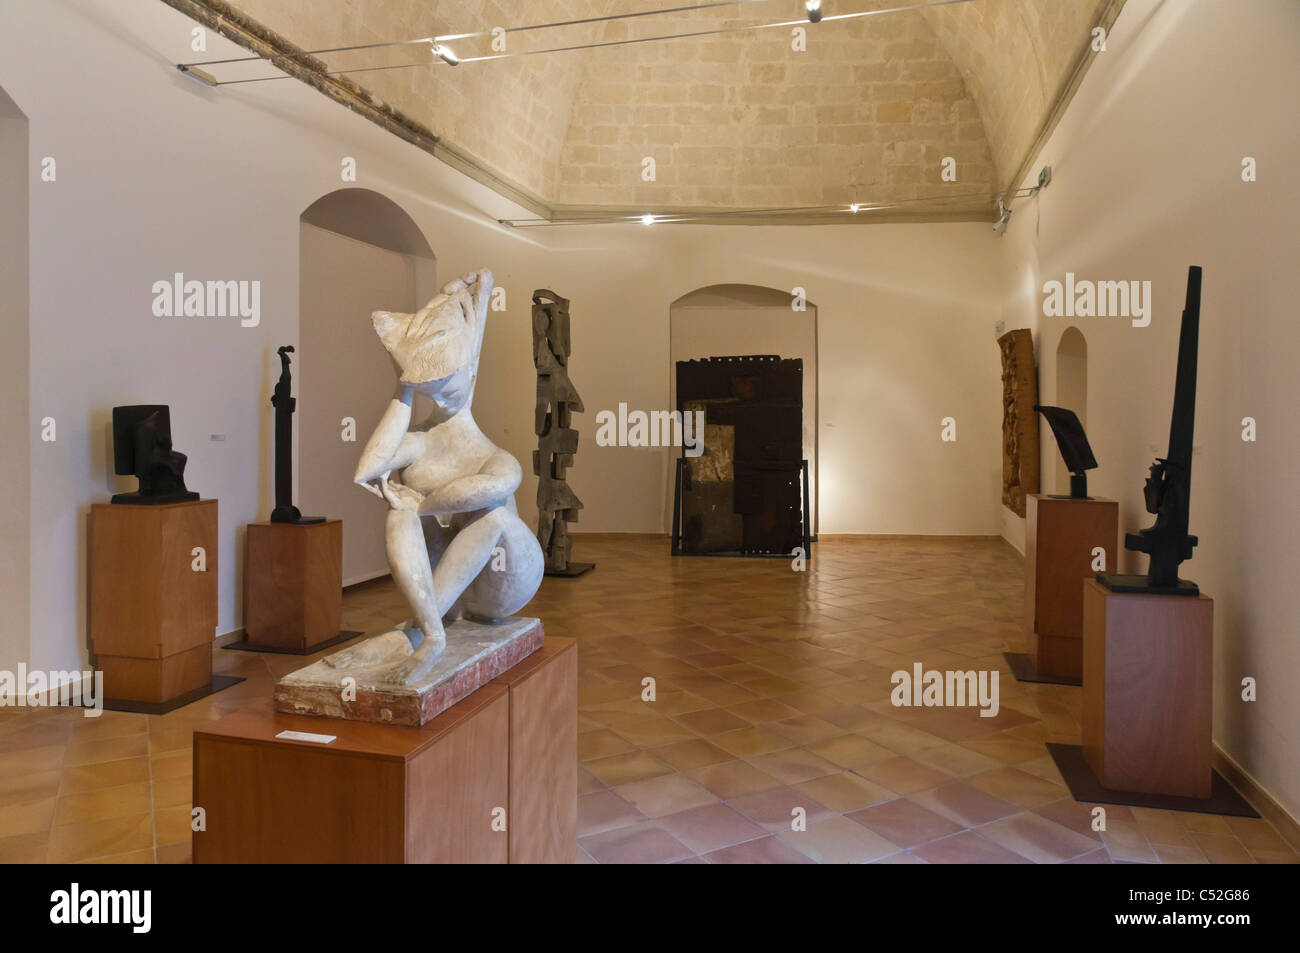 Italia - El único MUSMA galería de arte situada en cuevas del sitio de la UNESCO, el Sasso Caveoso de Matera. Foto de stock